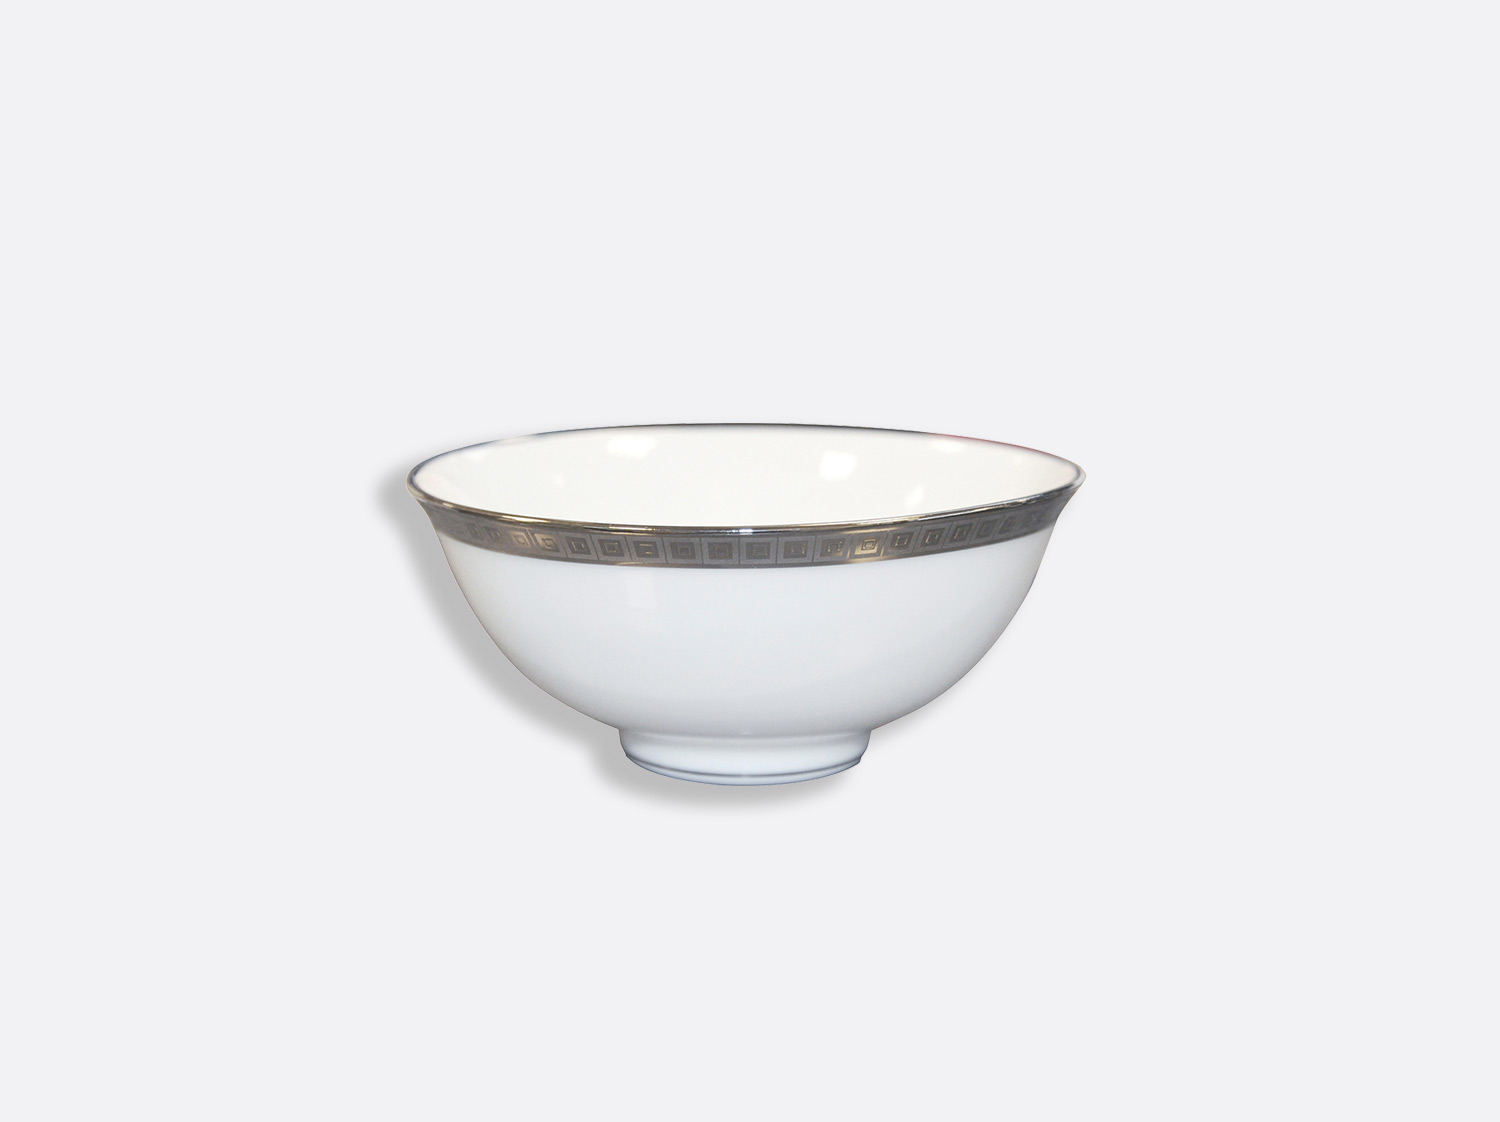 China Rice bowl 5" of the collection Athéna platinum | Bernardaud